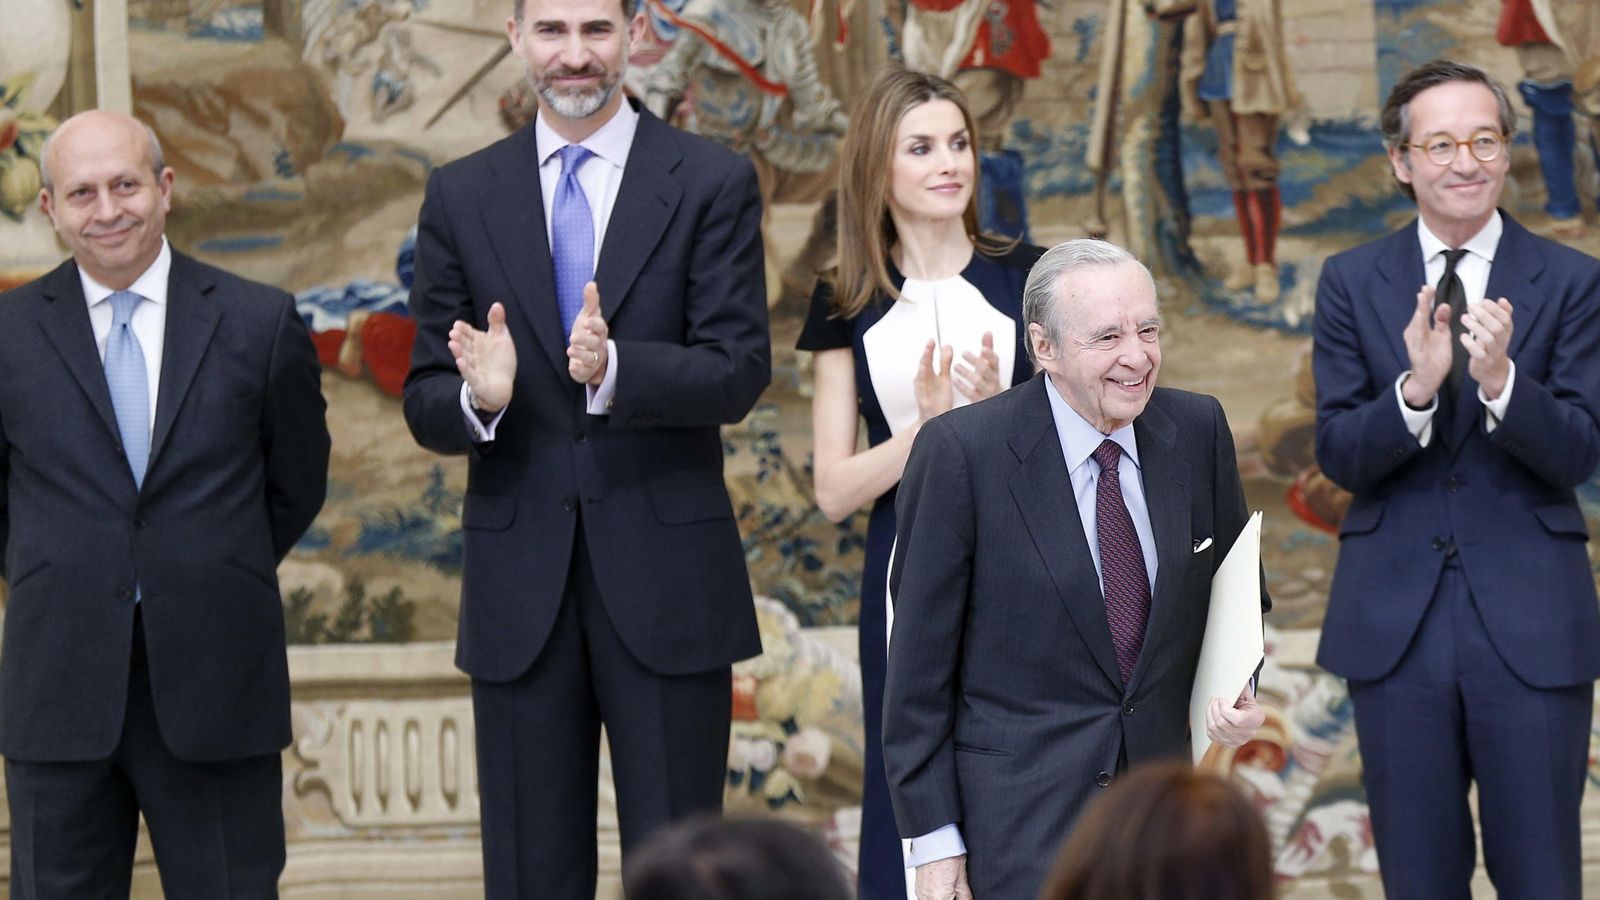 Foto: Los Reyes, junto al exministro José Ignacio Wert y el exsecretario de Cultura, José María Lassalle, entregan el premio 'Historia de España' a Sánchez Asiaín. (EFE)